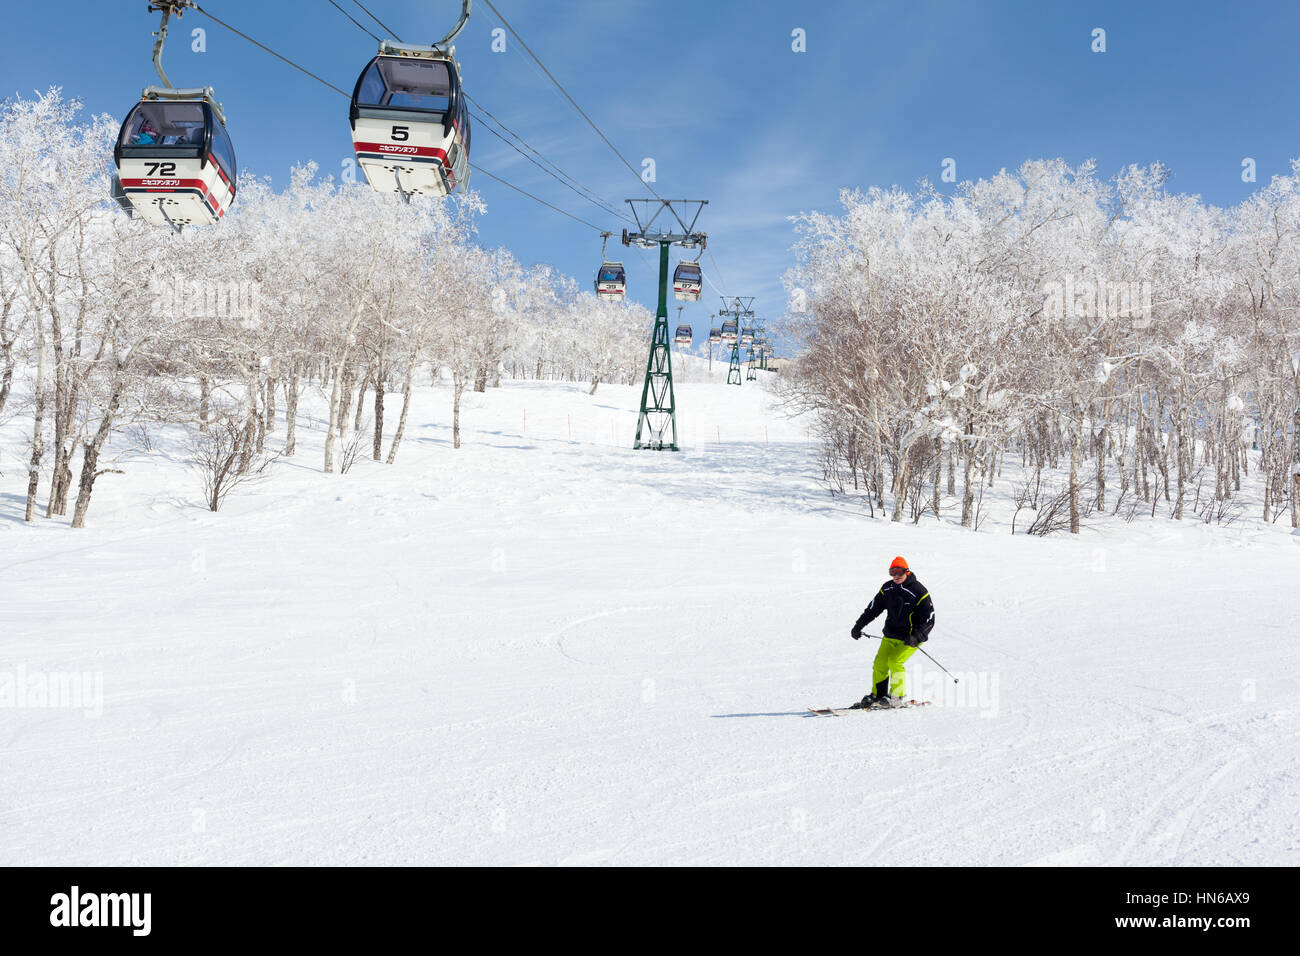 NISEKO, JAPON - 9 mars : Un homme a passé des skis en télécabine de la station de ski Niseko Annupuri, le 9 mars 2012. Niseko est une grande station de sports d'hiver Banque D'Images